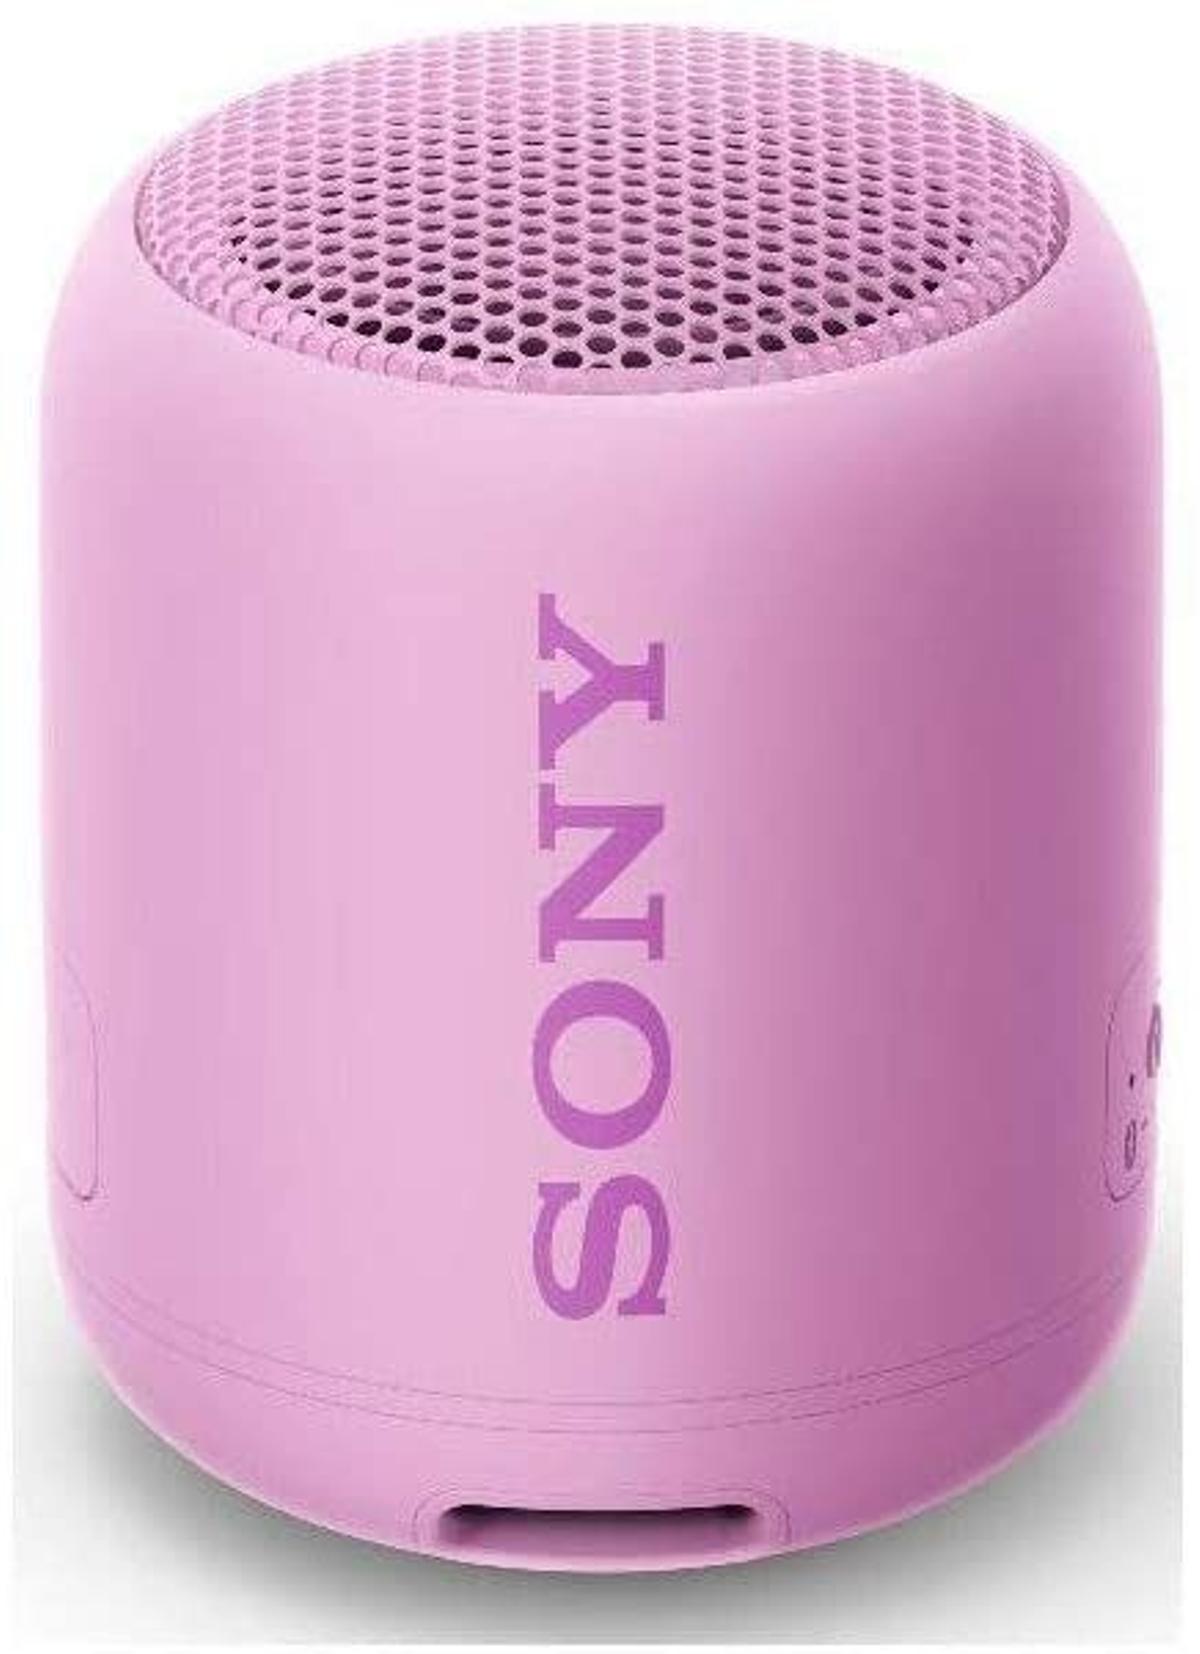 Altavoz inalámbrico de Sony en color rosa